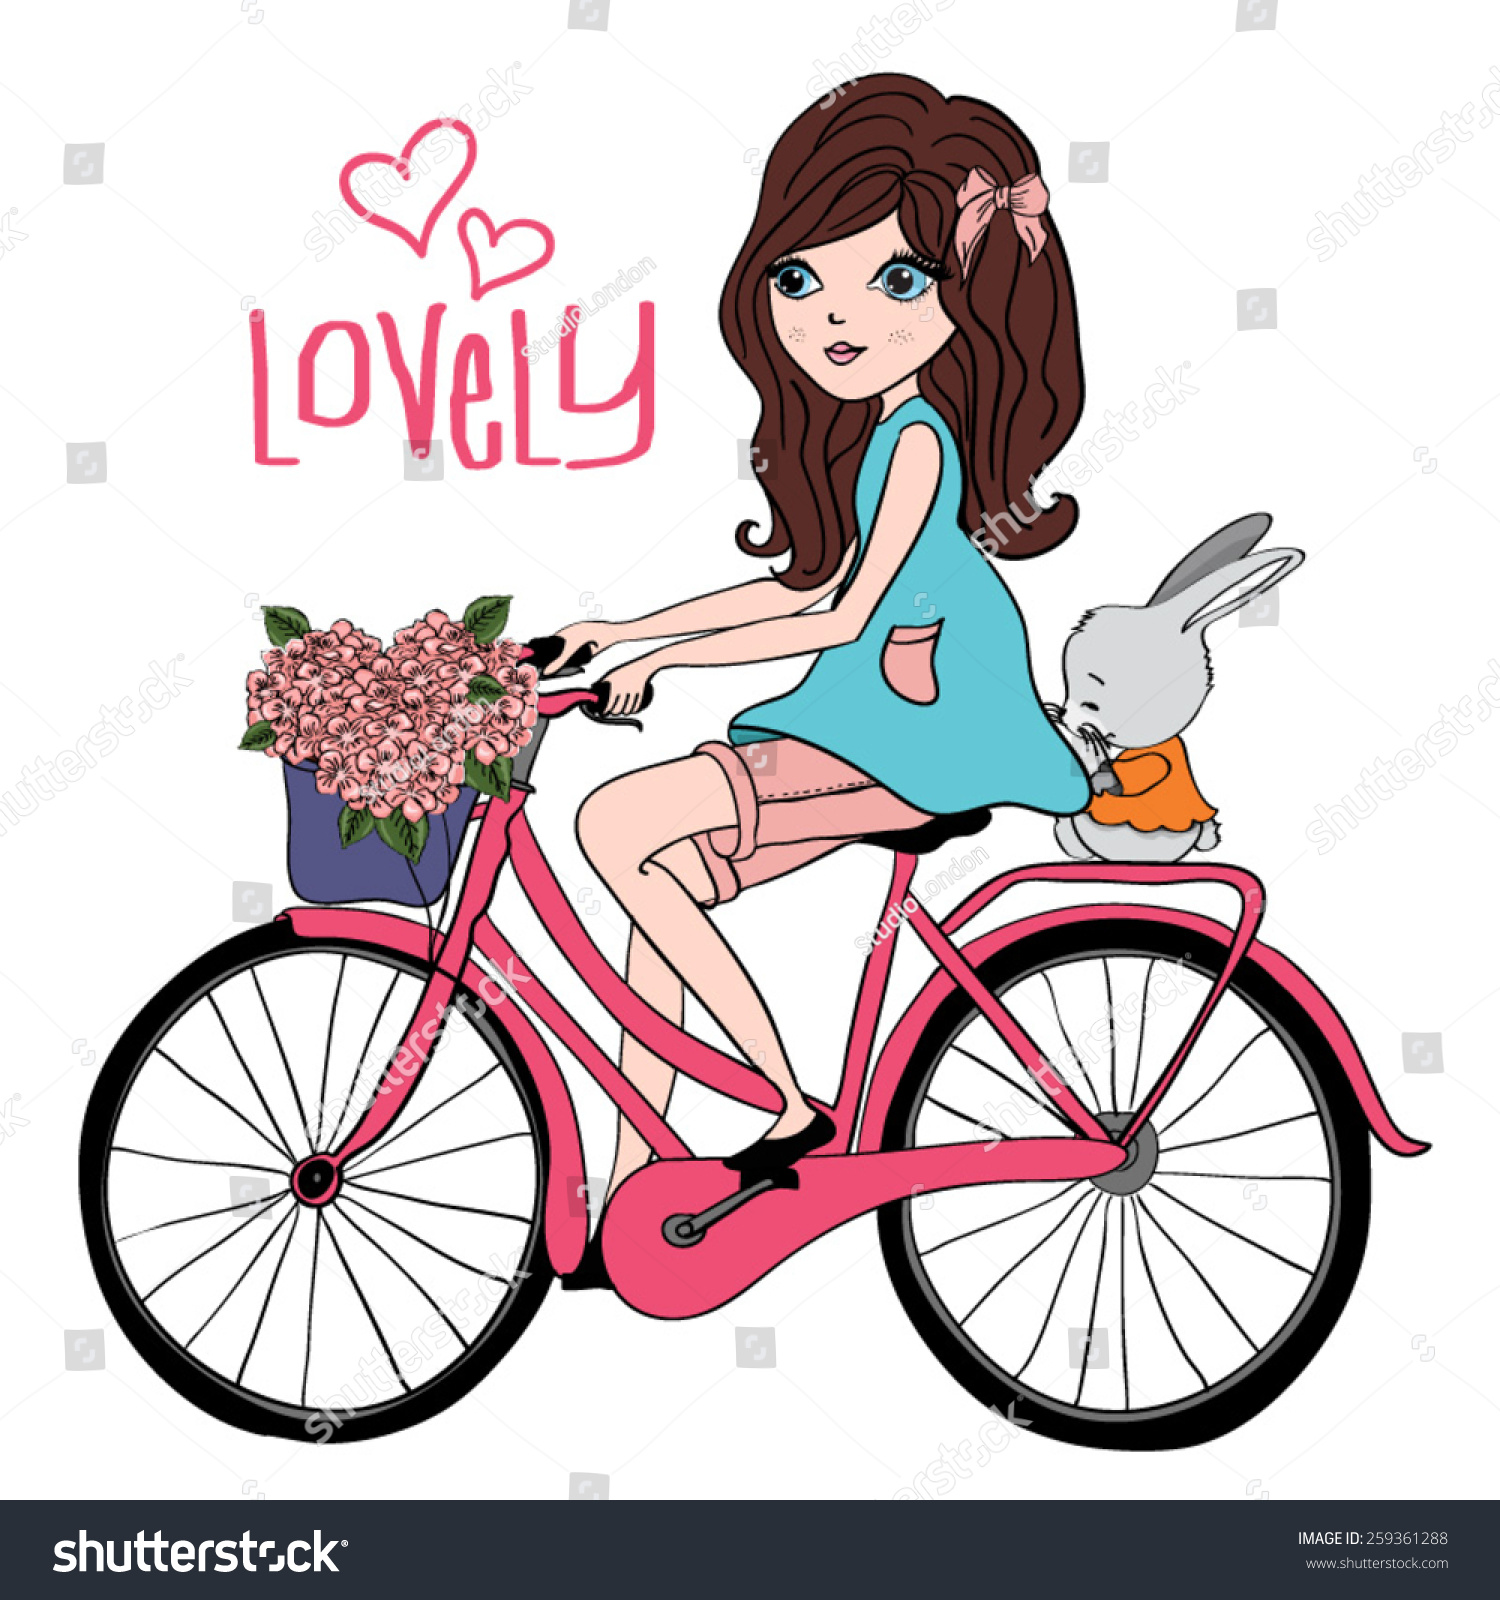 girl on bike clipart - photo #19